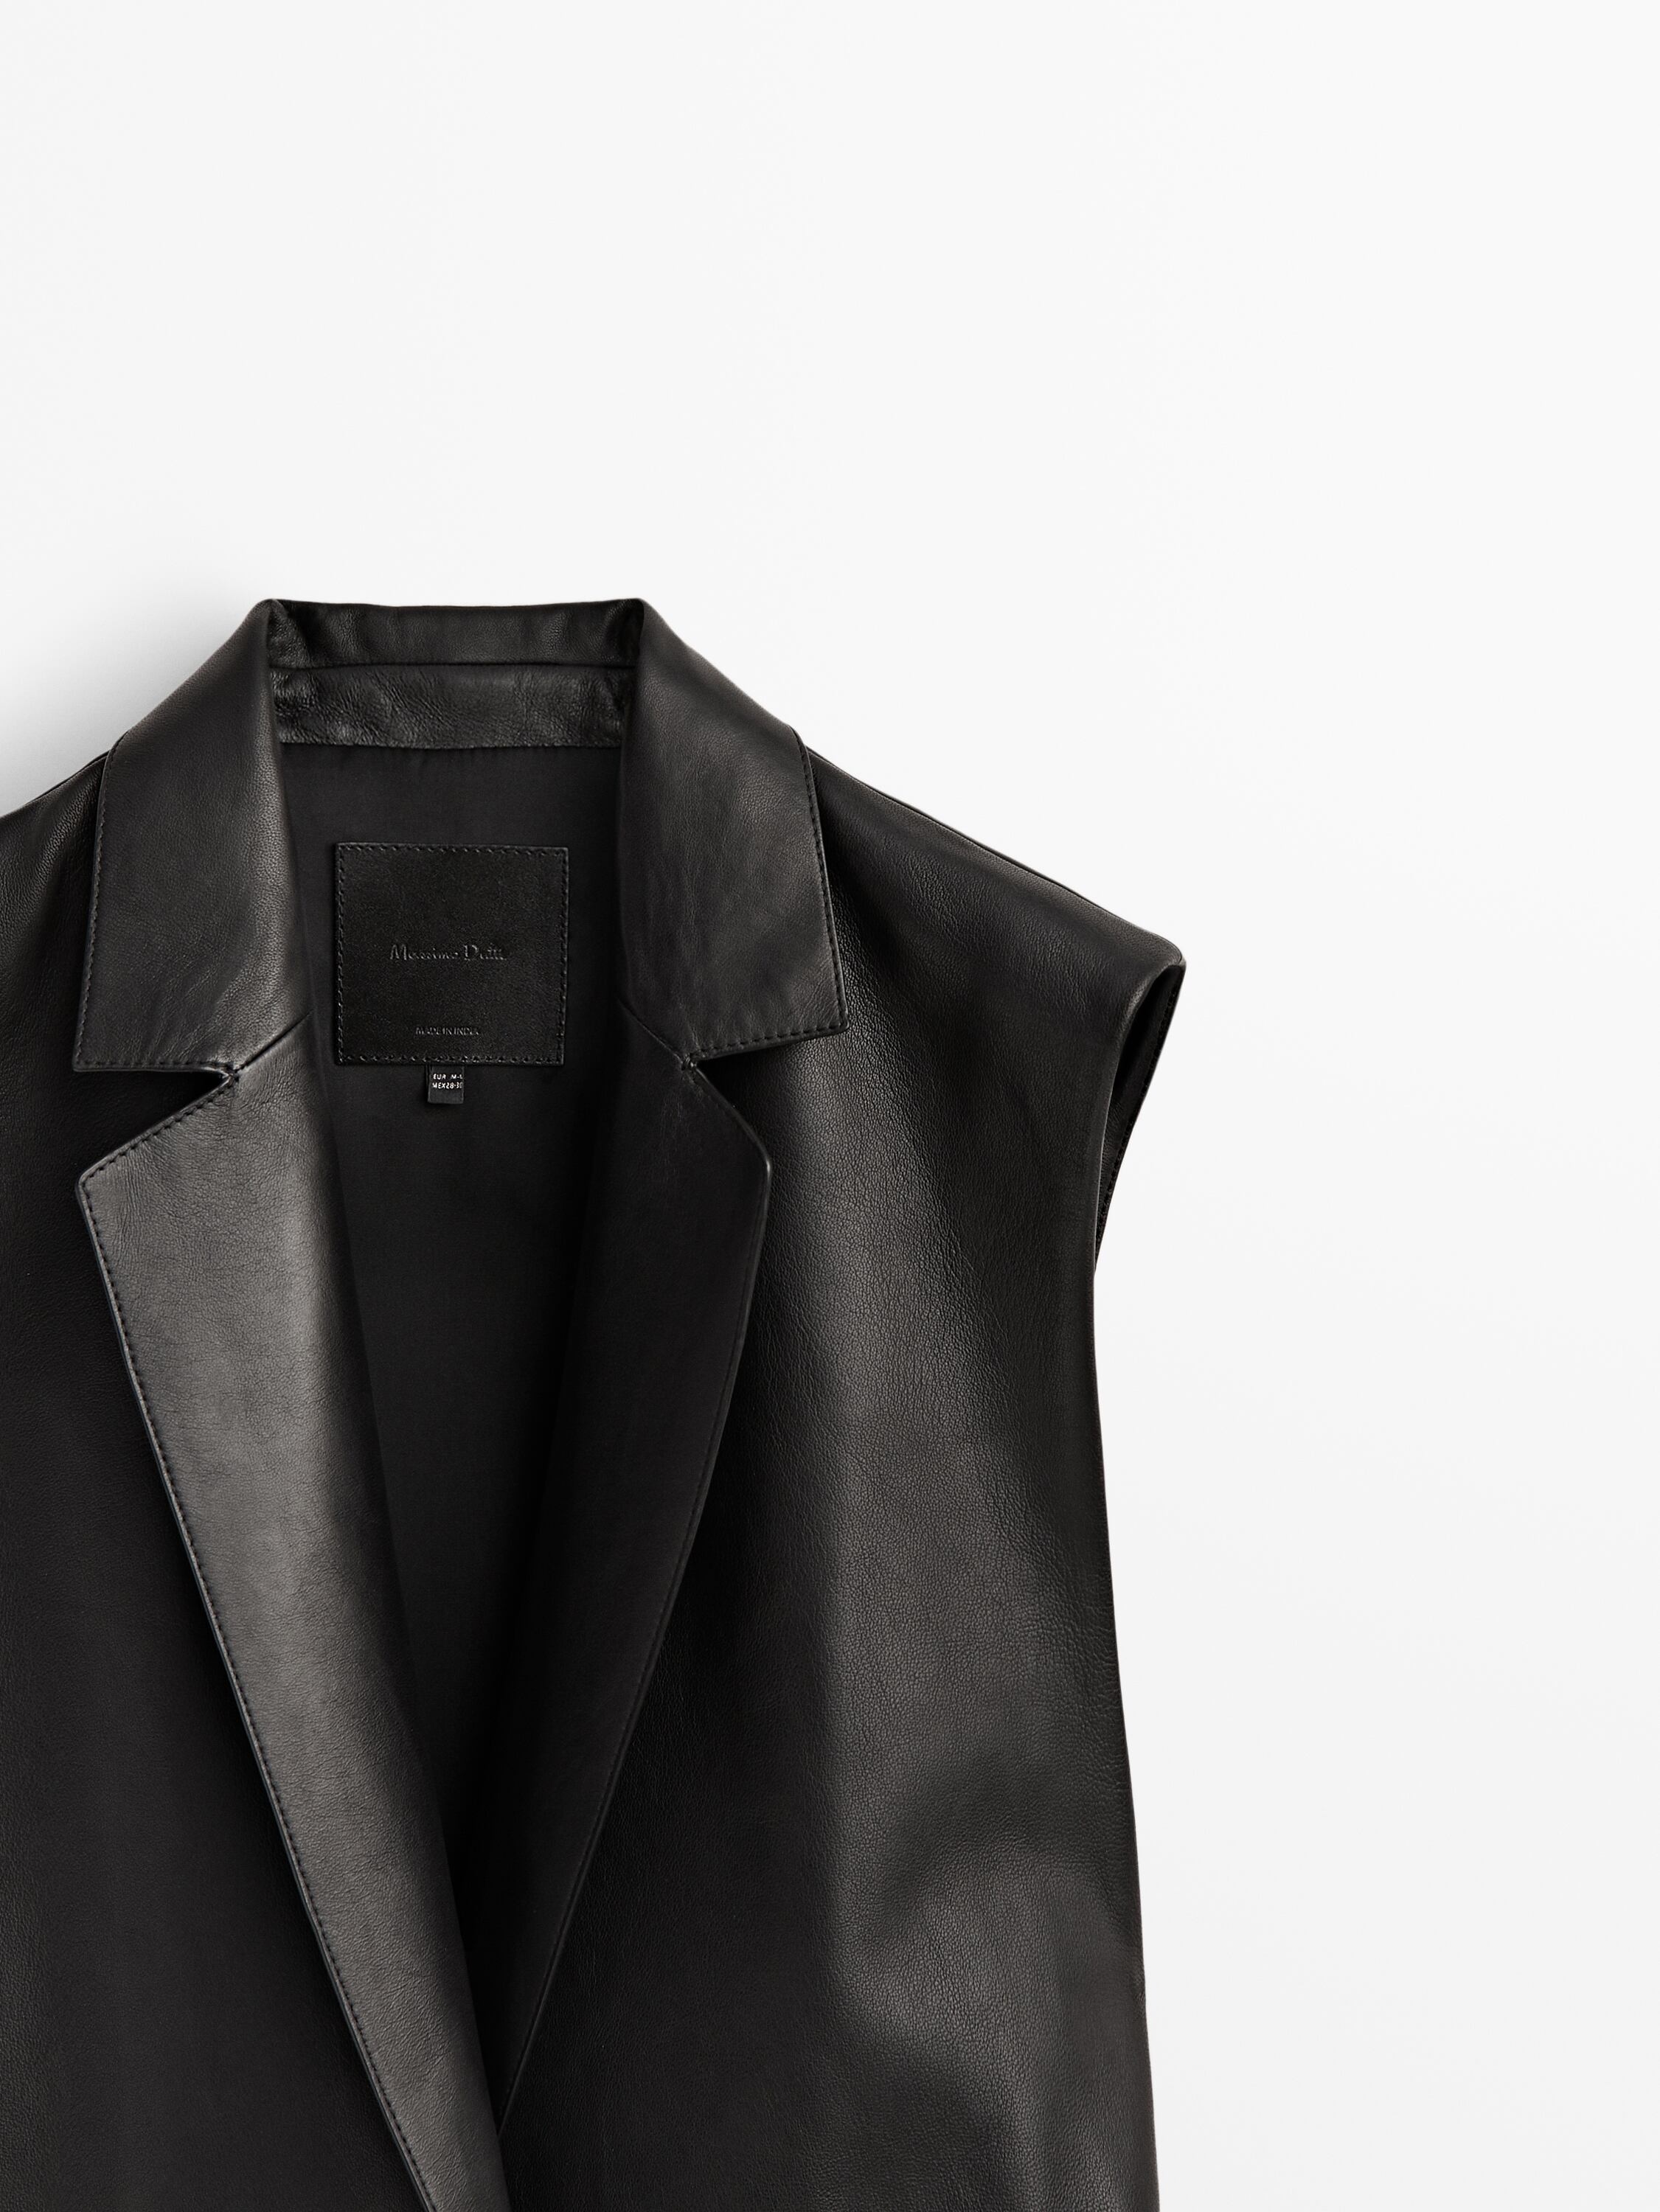 Nappa leather waistcoat